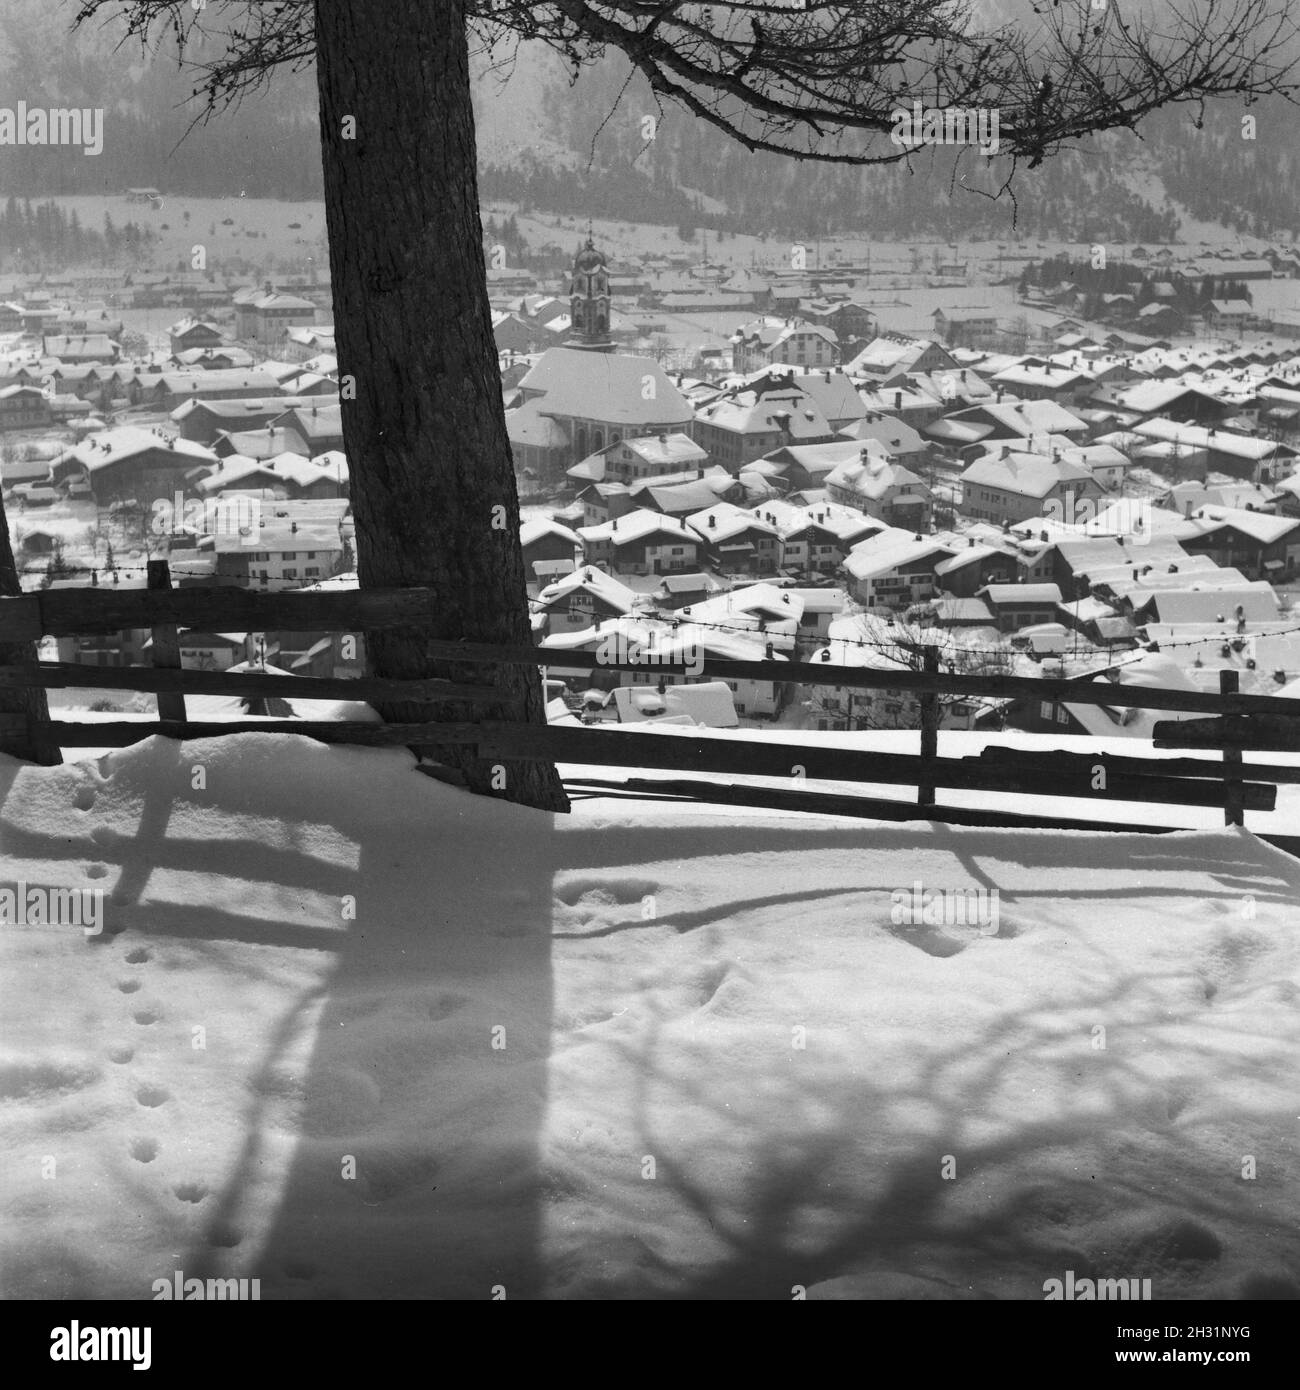 Blci auf Immenstadt im Allgäu, Deutschland 1930er Jahre. View to Immenstadt in the Allgaeu area, Germany 1930s. Stock Photo